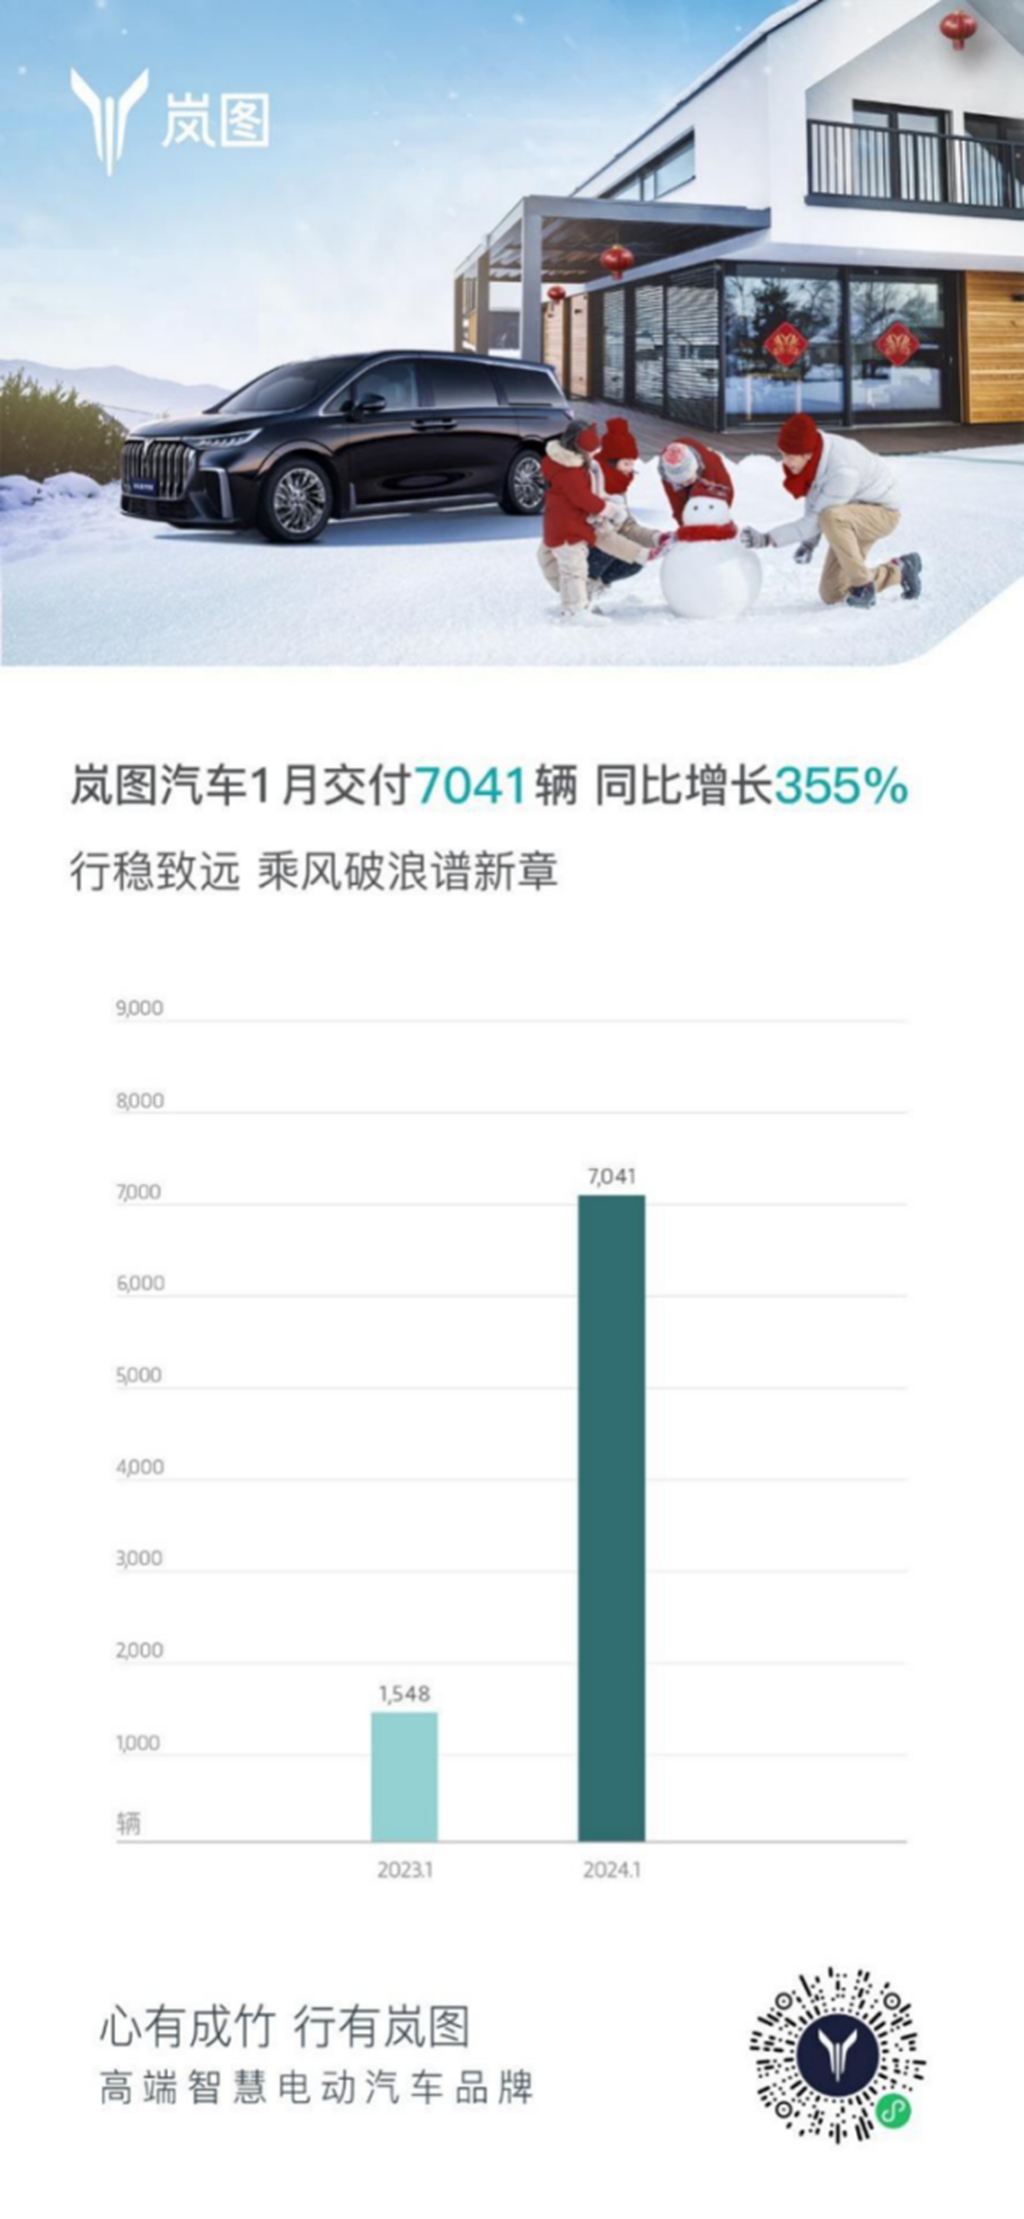 岚图汽车1月交付7041辆 同比增长355%